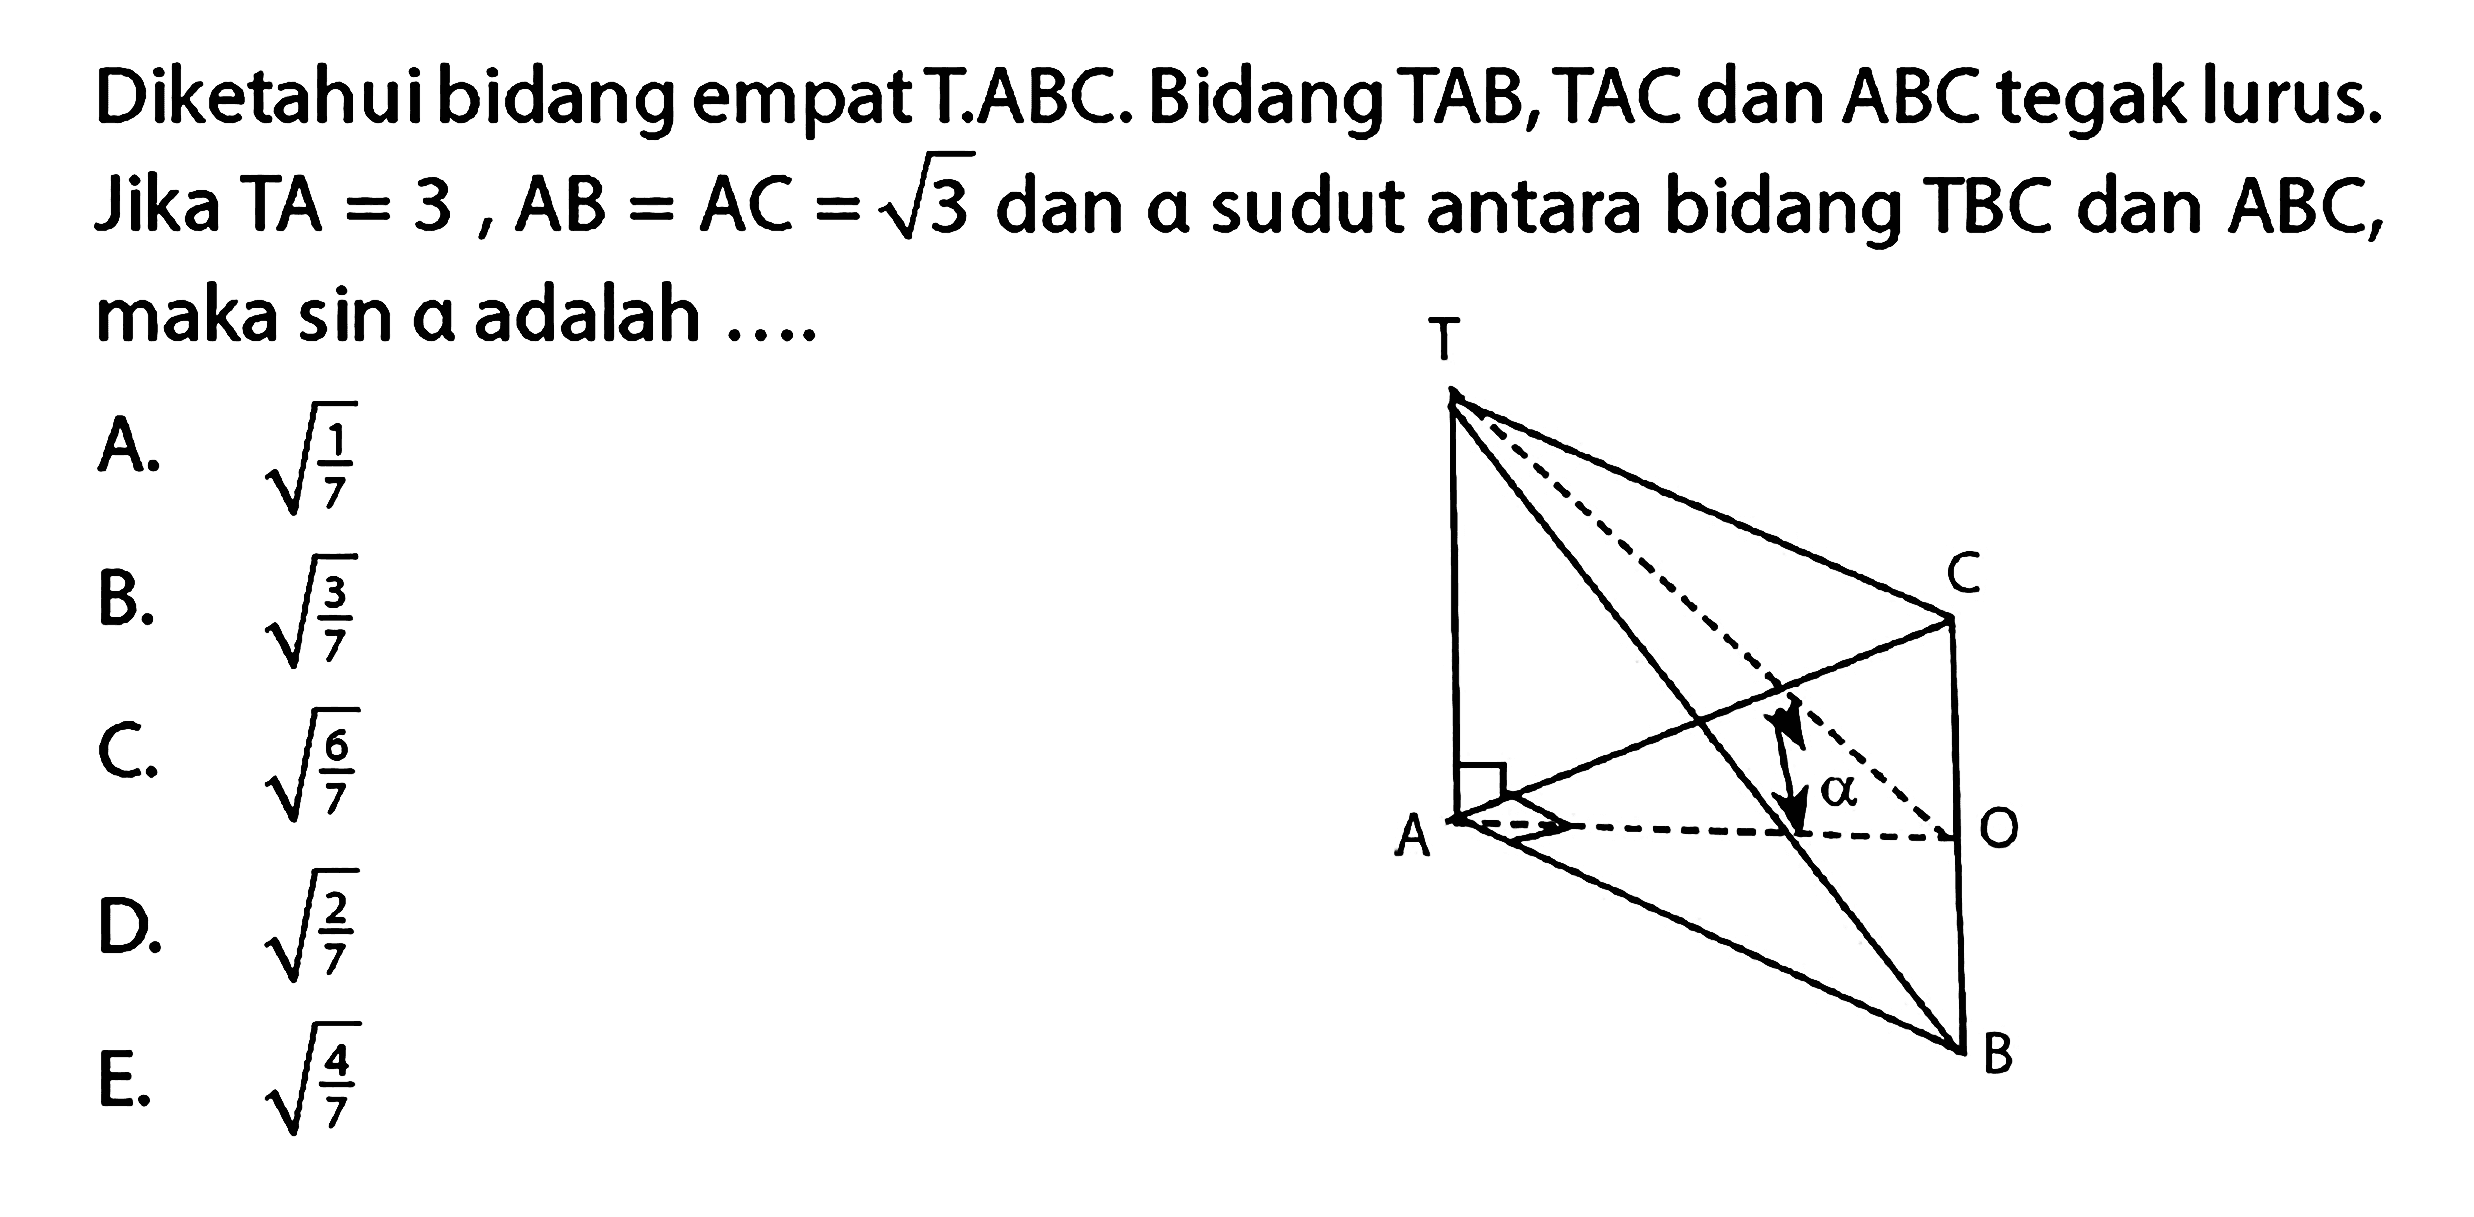 Diketahuibidangempat T.ABC. Bidang TAB, TAC dan ABC tegak lurus. Jika TA=3, AB=AC=akar(3) dan alpha sudut antara bidang TBC dan ABC, maka sin alpha adalah.... T C alpha O A B